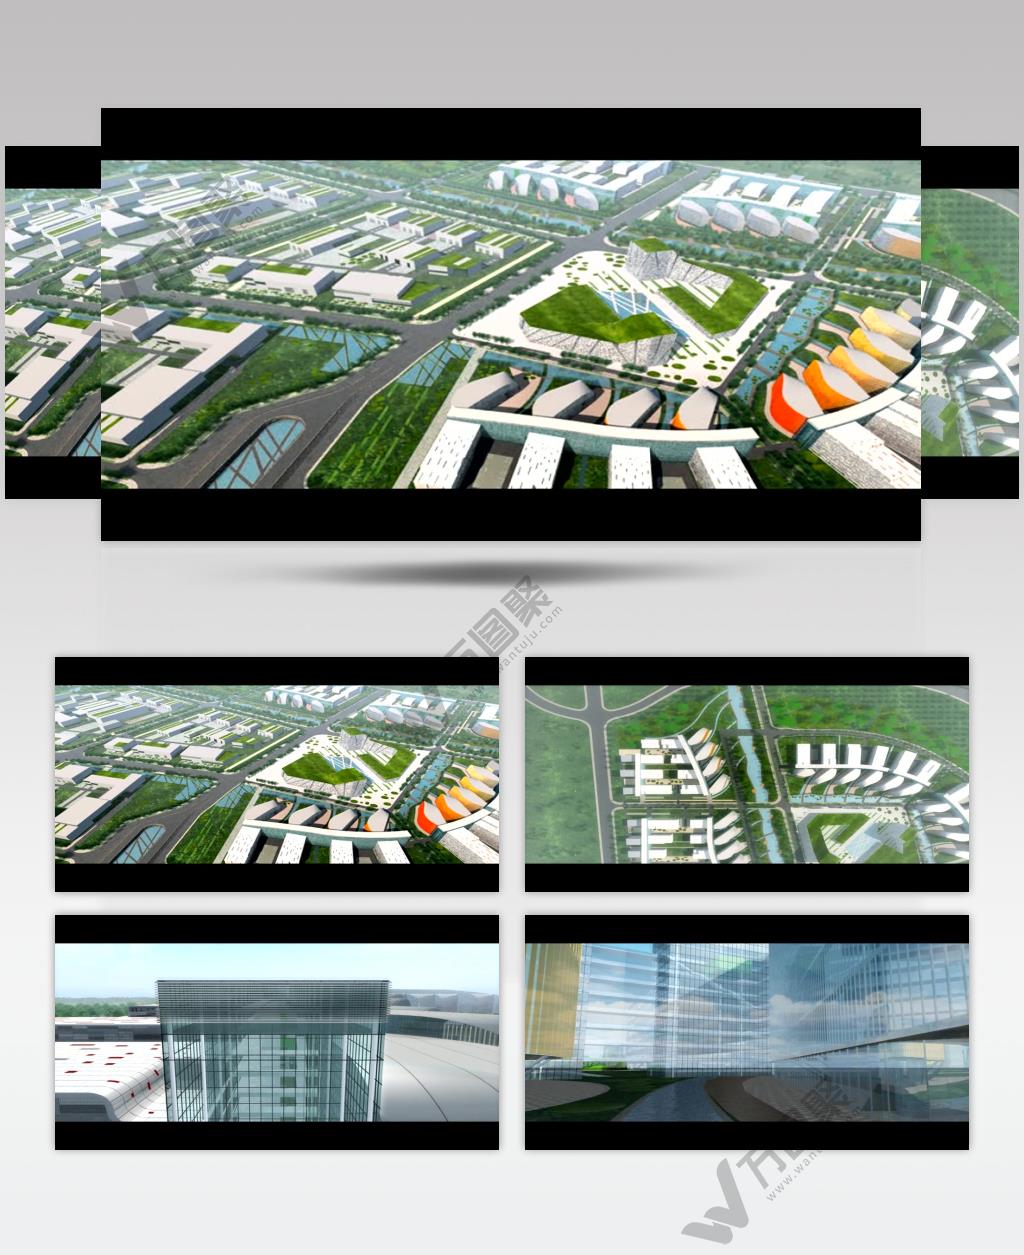 36 中石油科技产业园国际投标竞赛 北京院+As三建维建筑动画地产动画